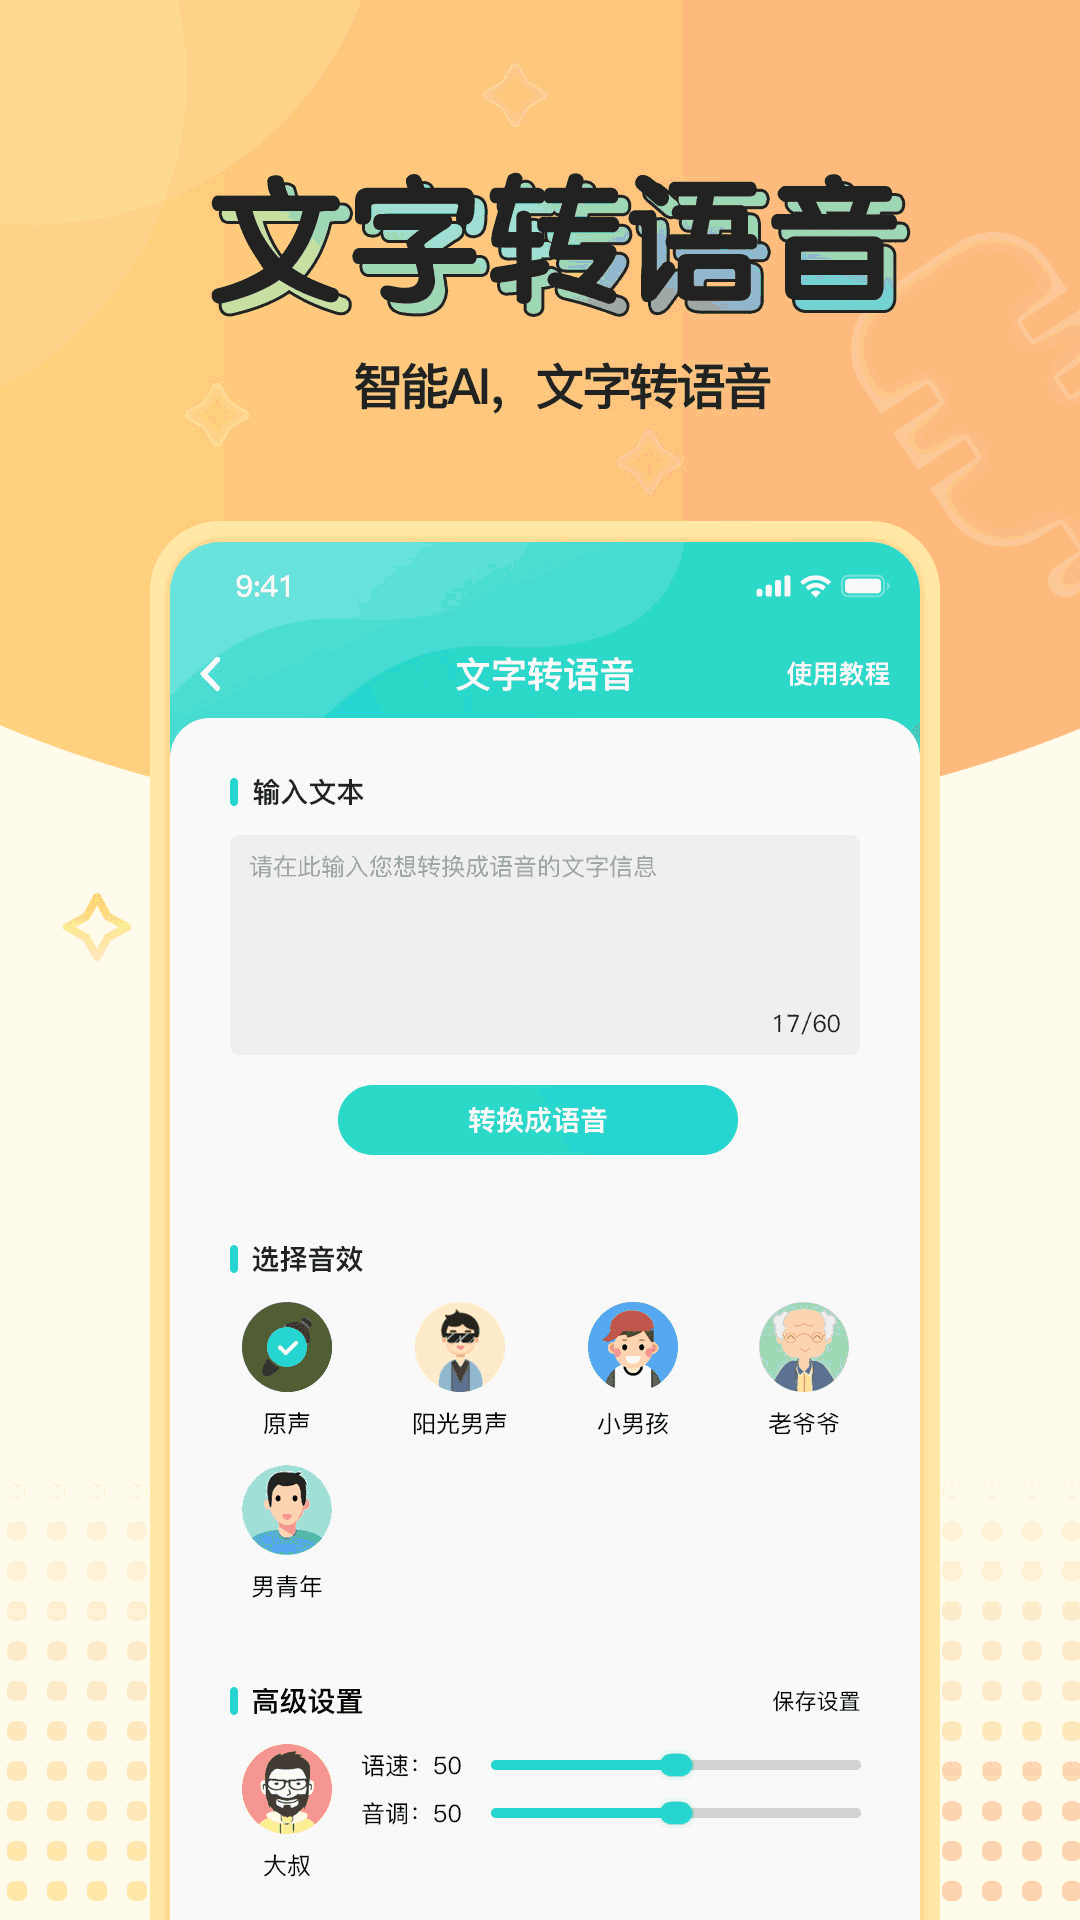 WhatsApp官方中文版，享受更多便利功能